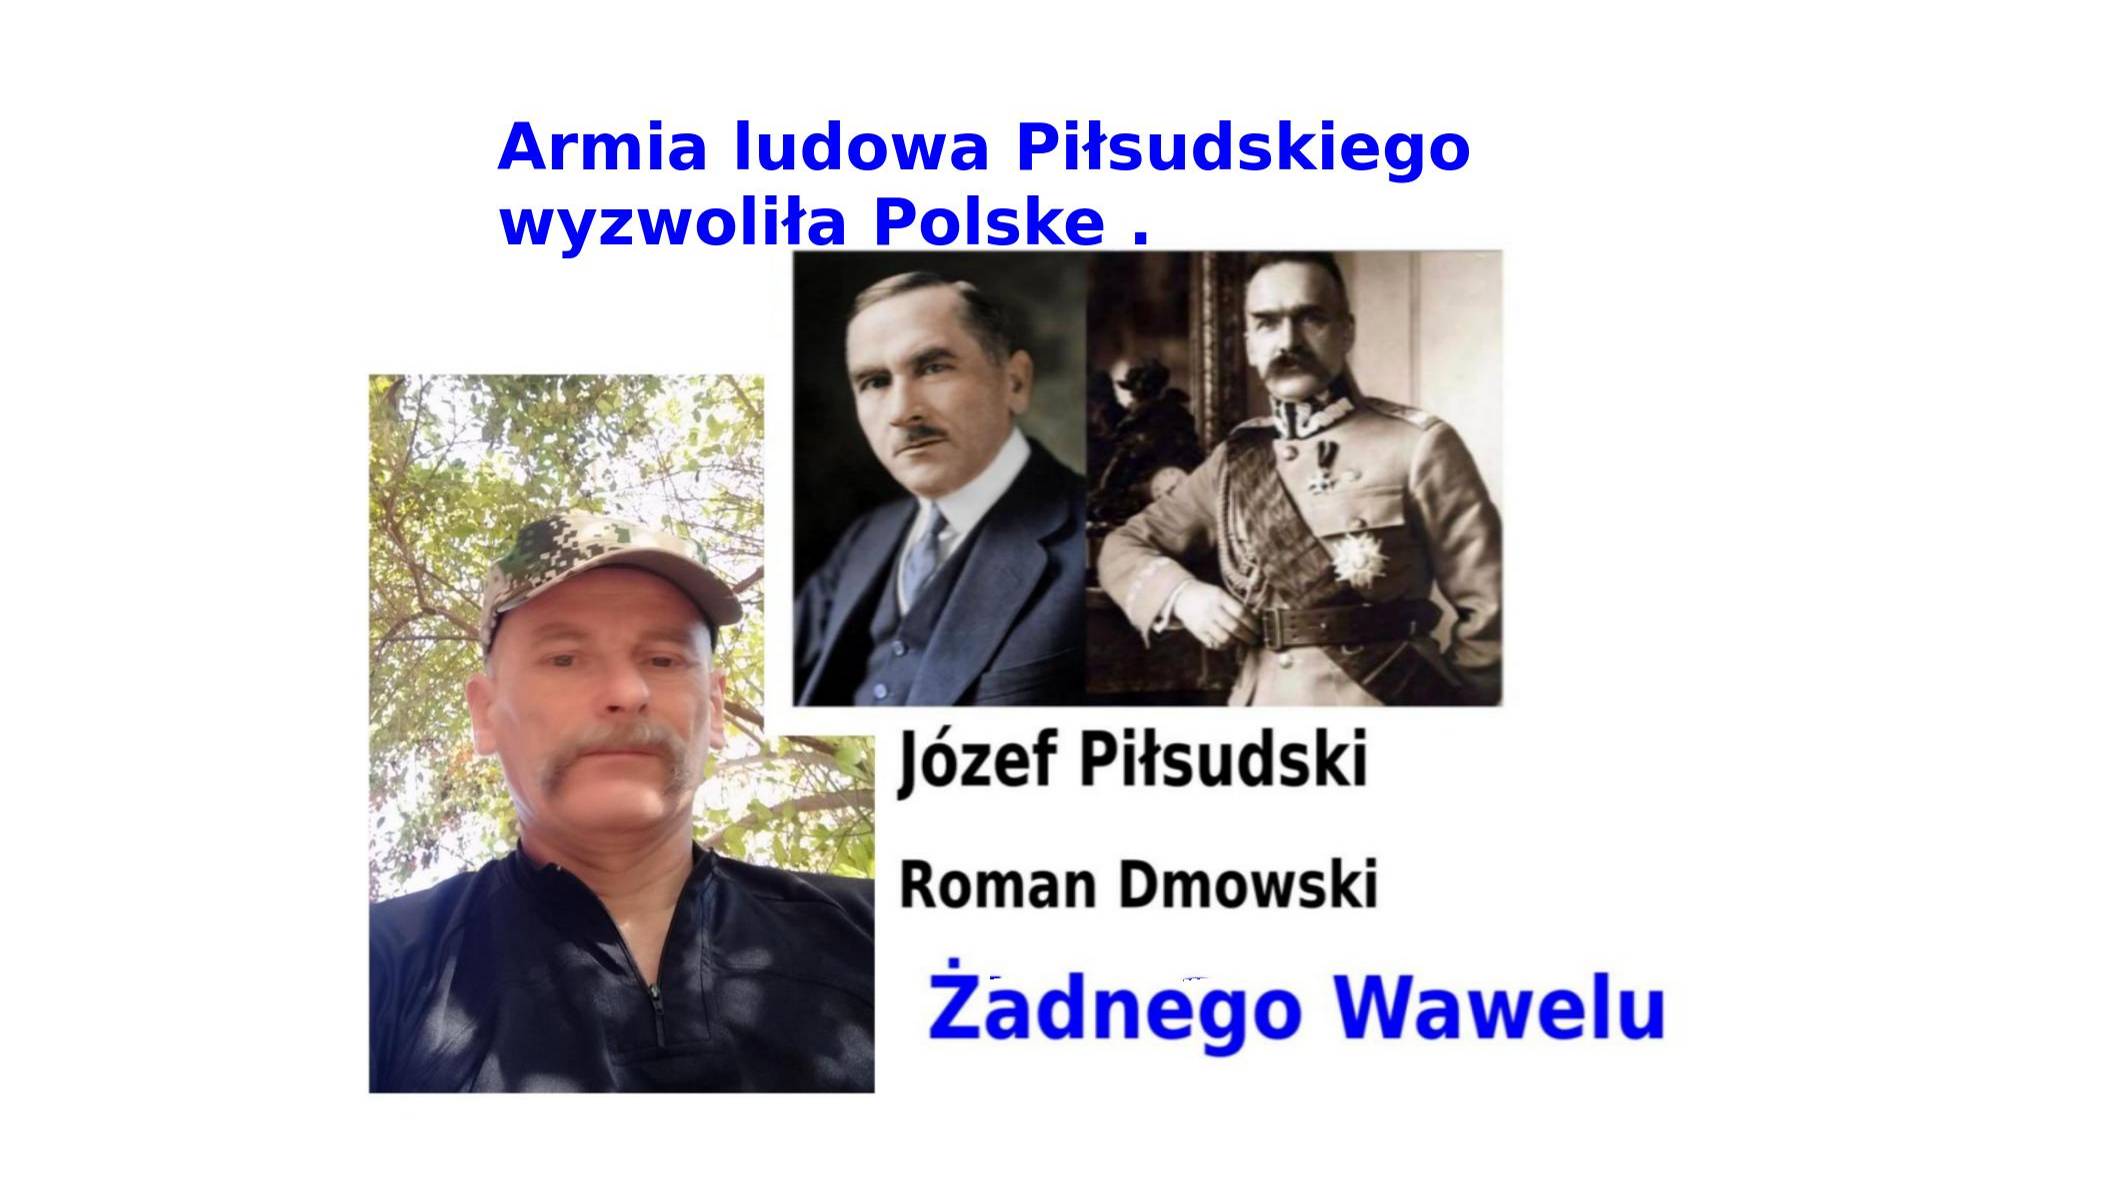 Dmowski i Józef Piłsudski , Armia ludowa Piłsudskiego wyzwoliła Polske .